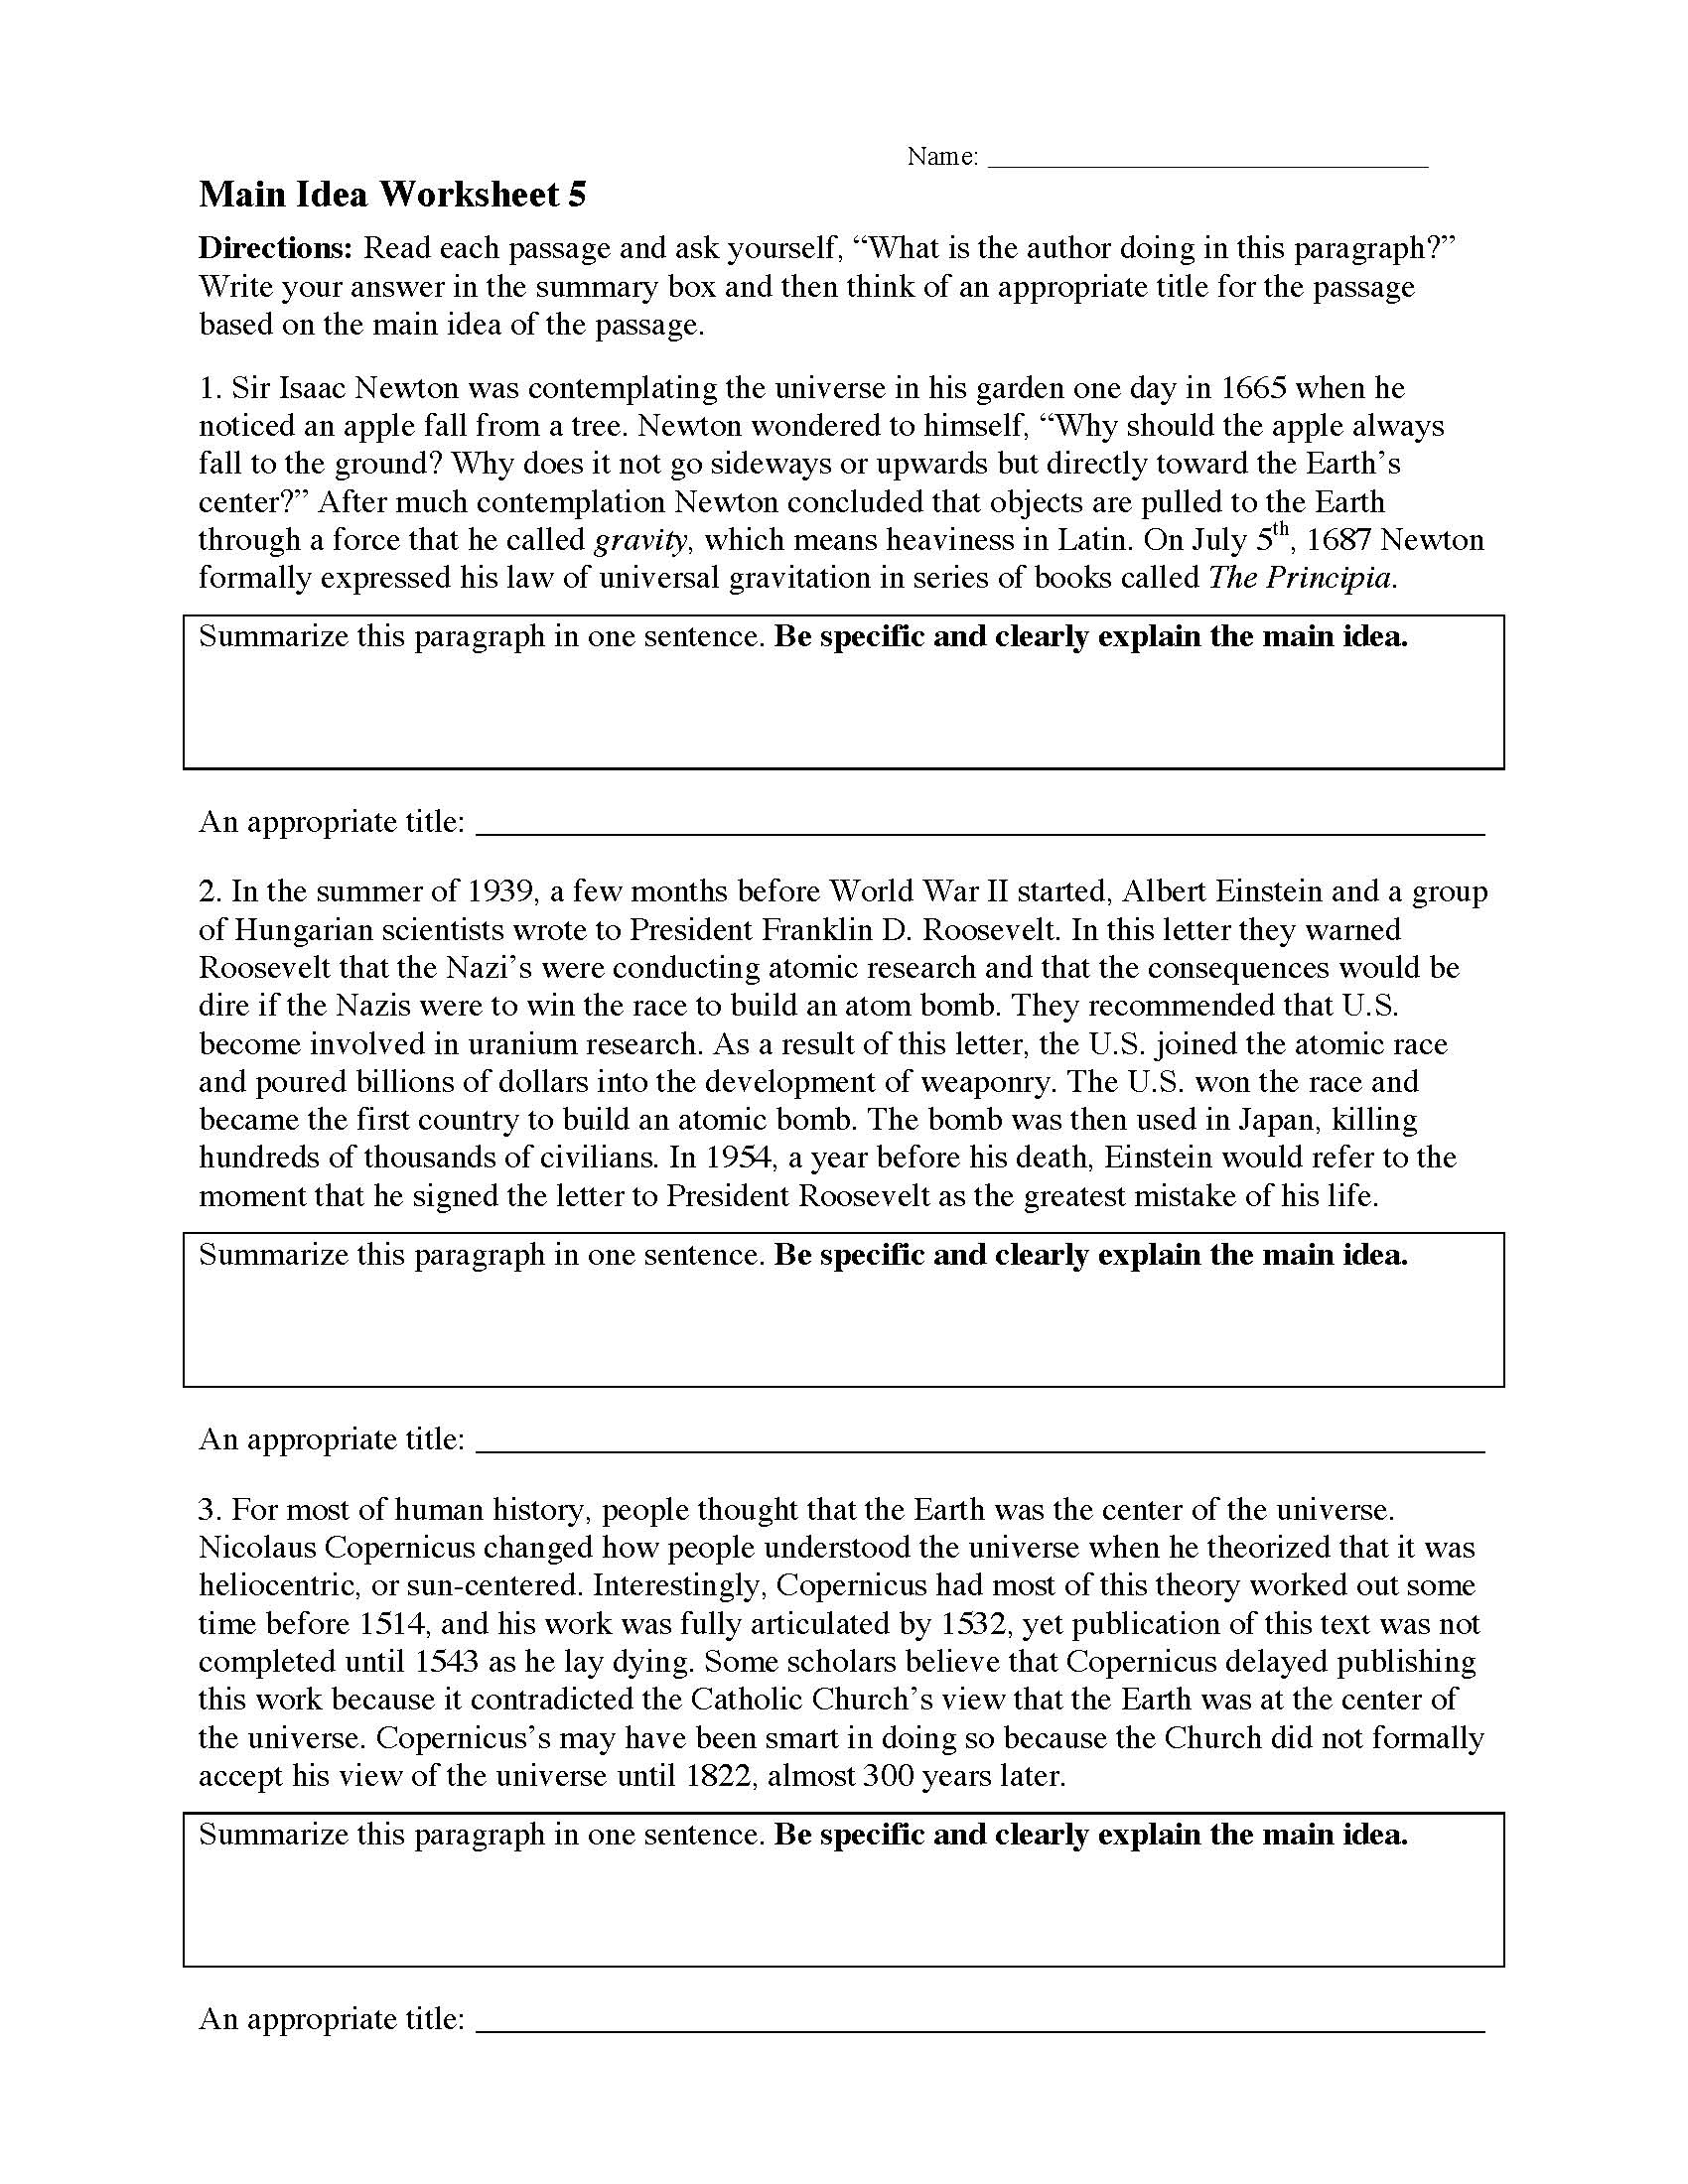 Main Idea Worksheet 22  Reading Activity For Main Idea Worksheet 5